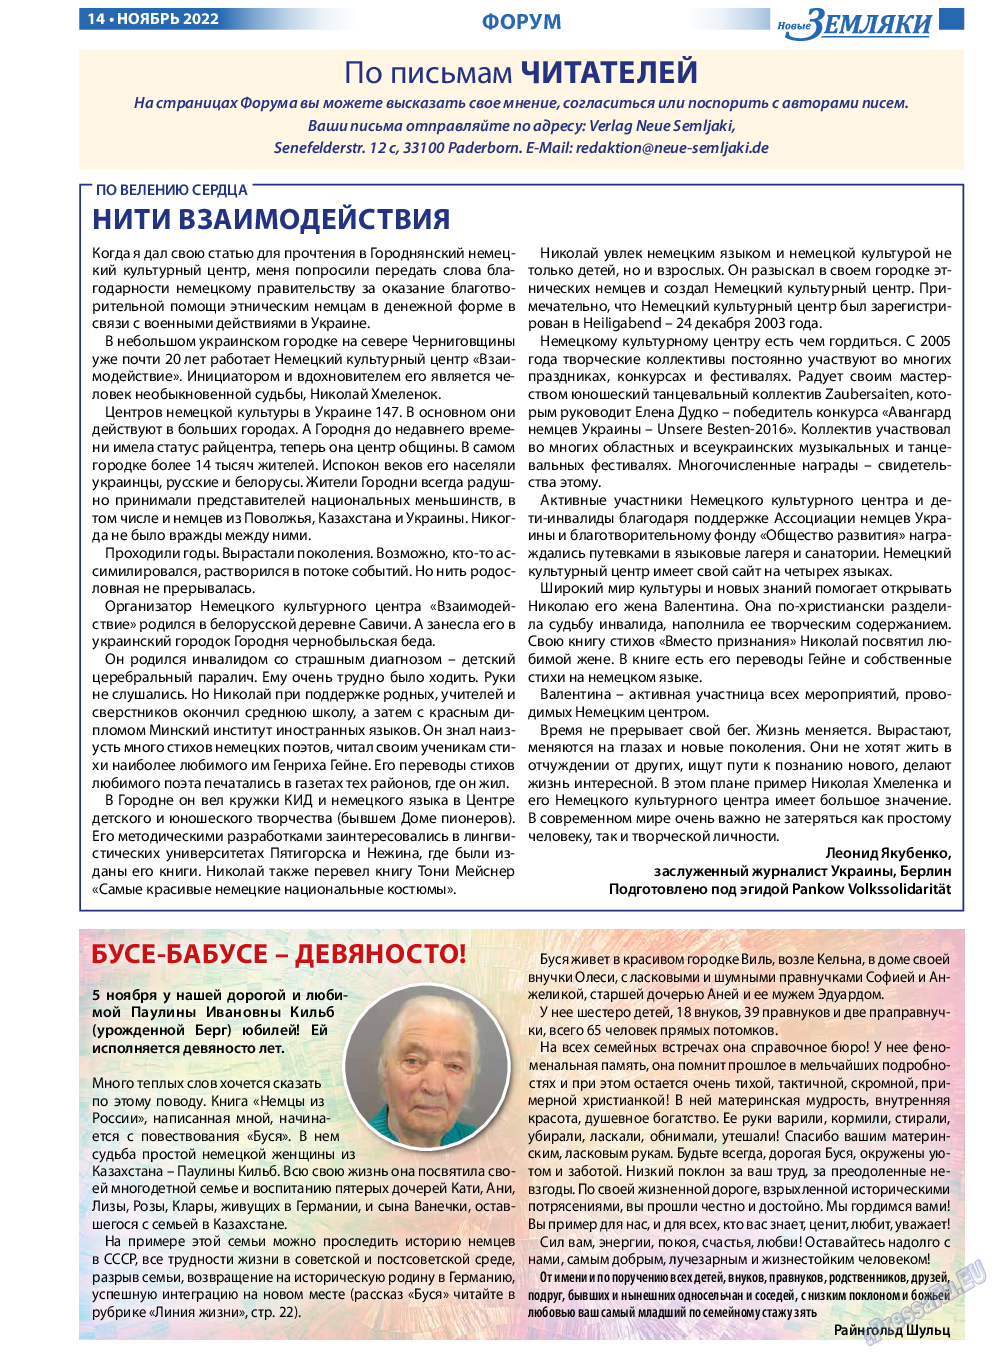 Новые Земляки, газета. 2022 №11 стр.14